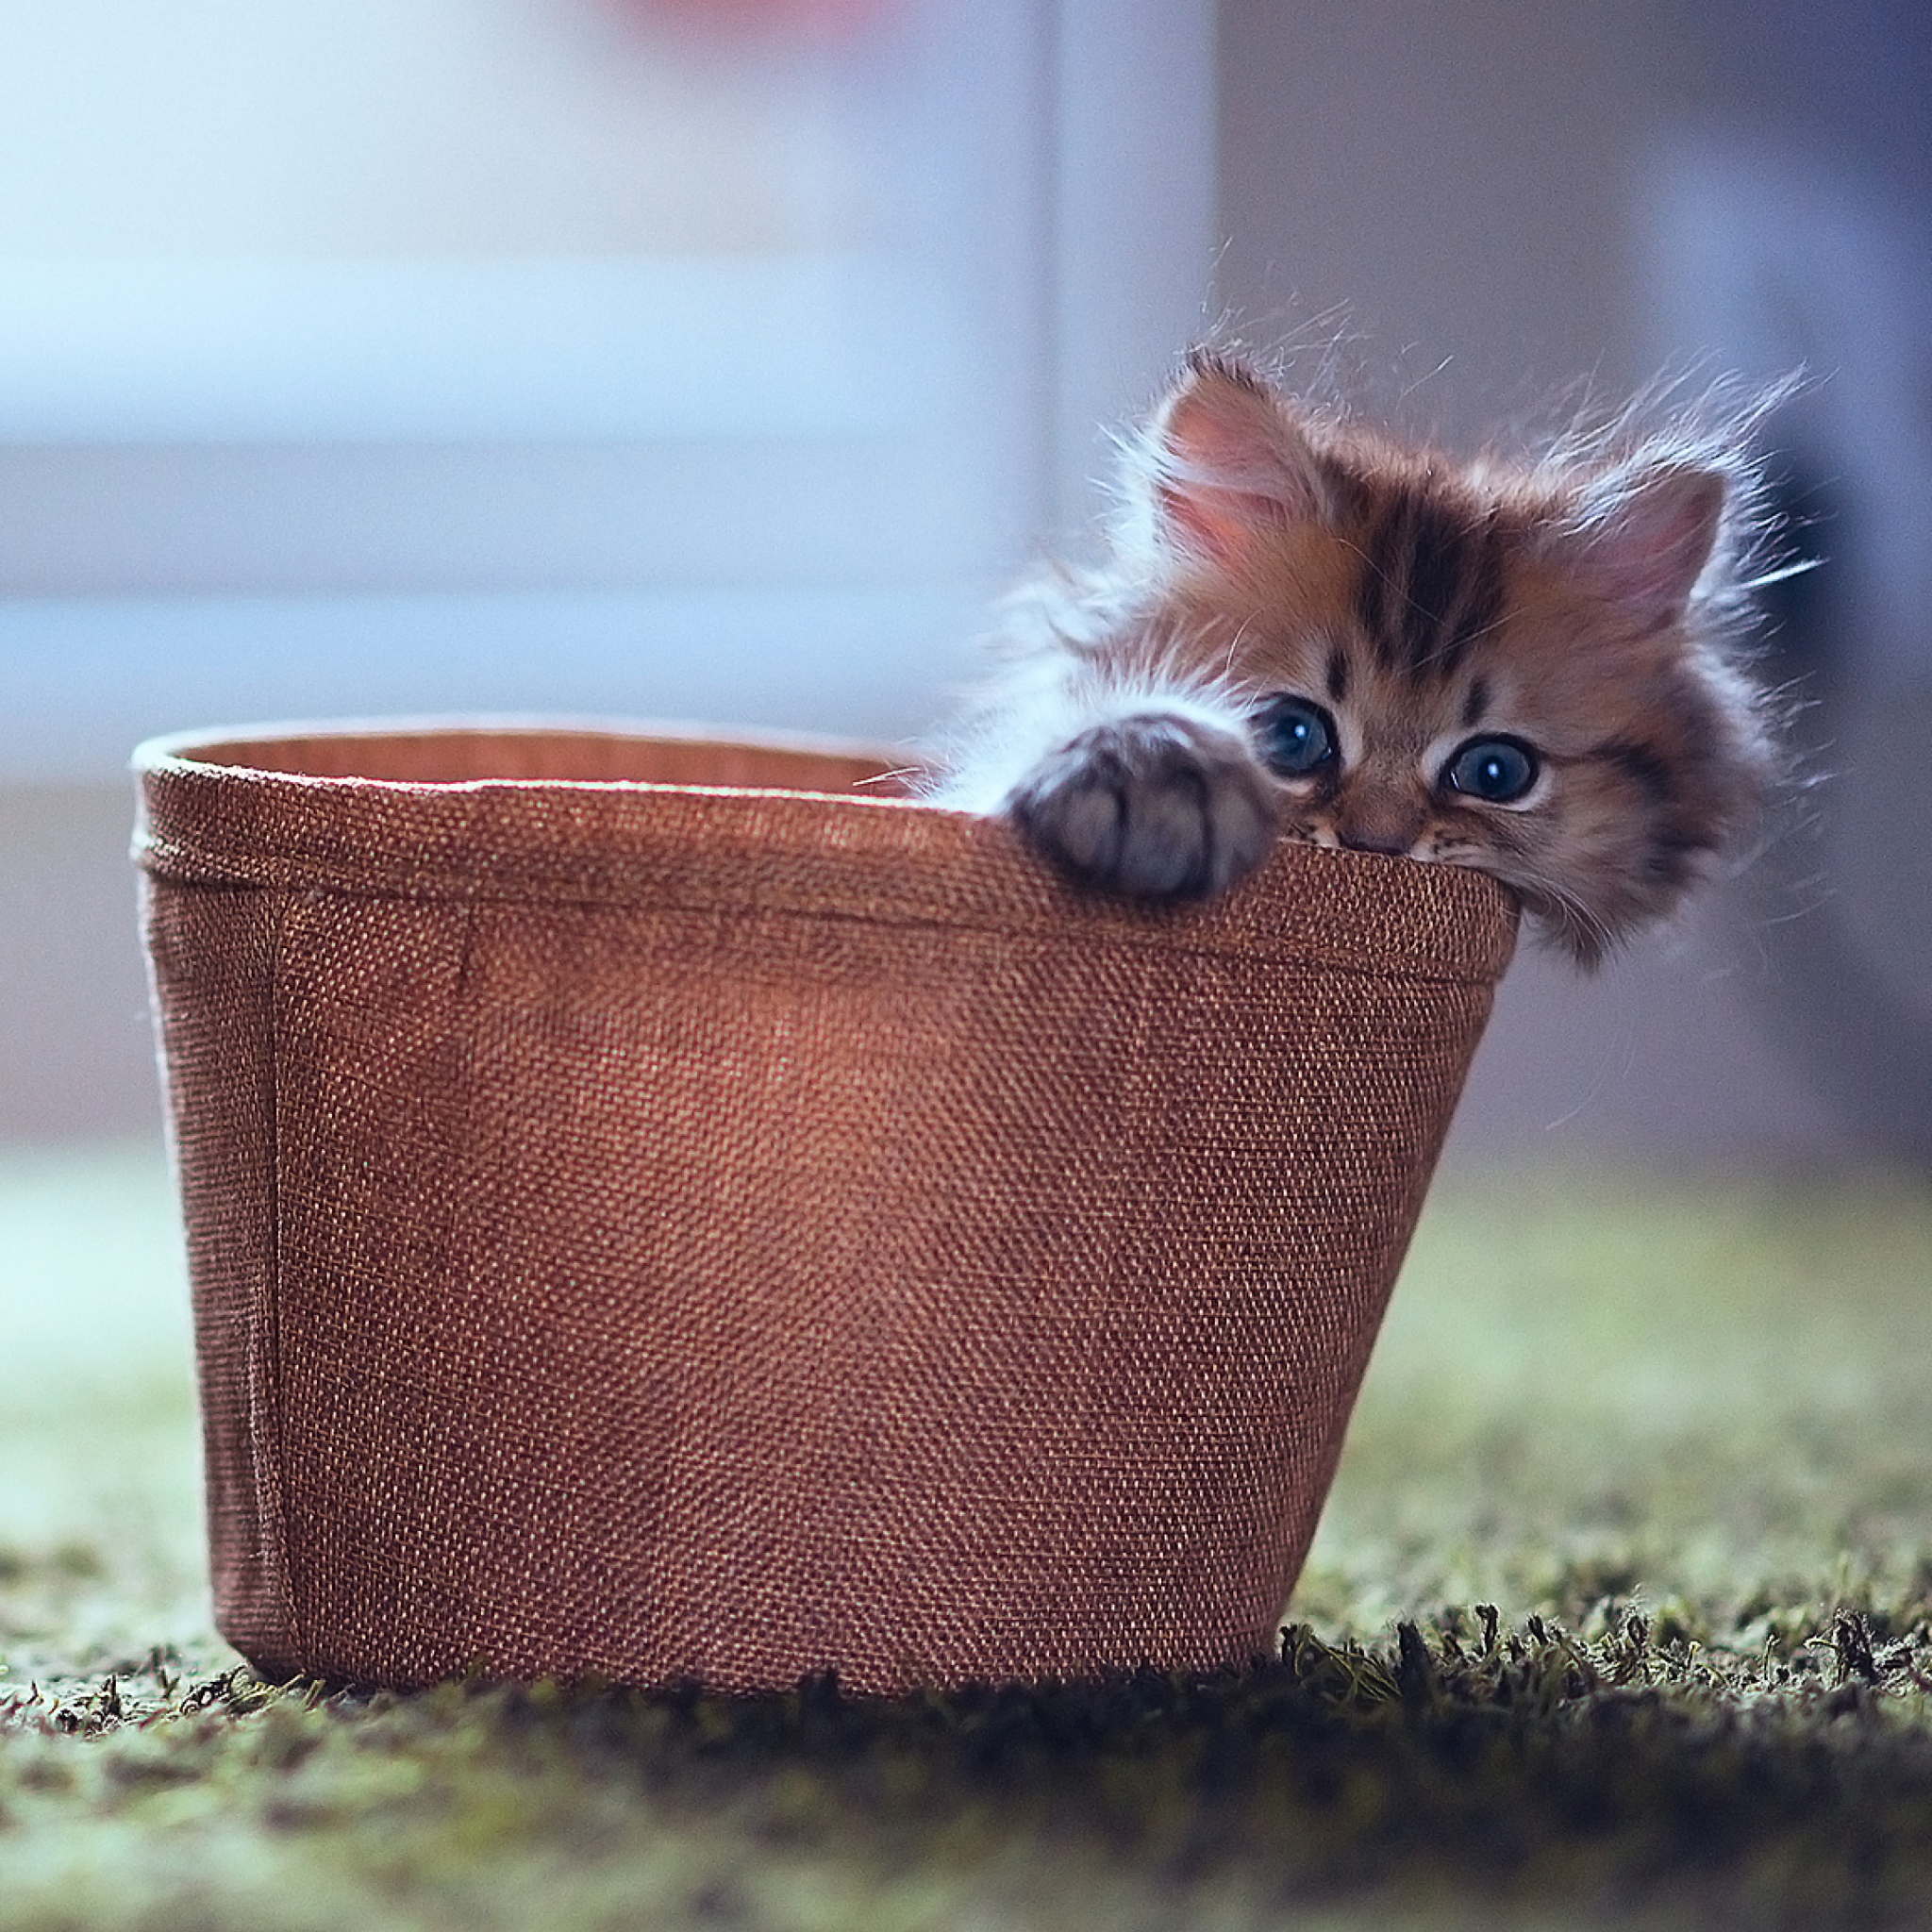 Little Kitten In Basket wallpaper 2048x2048